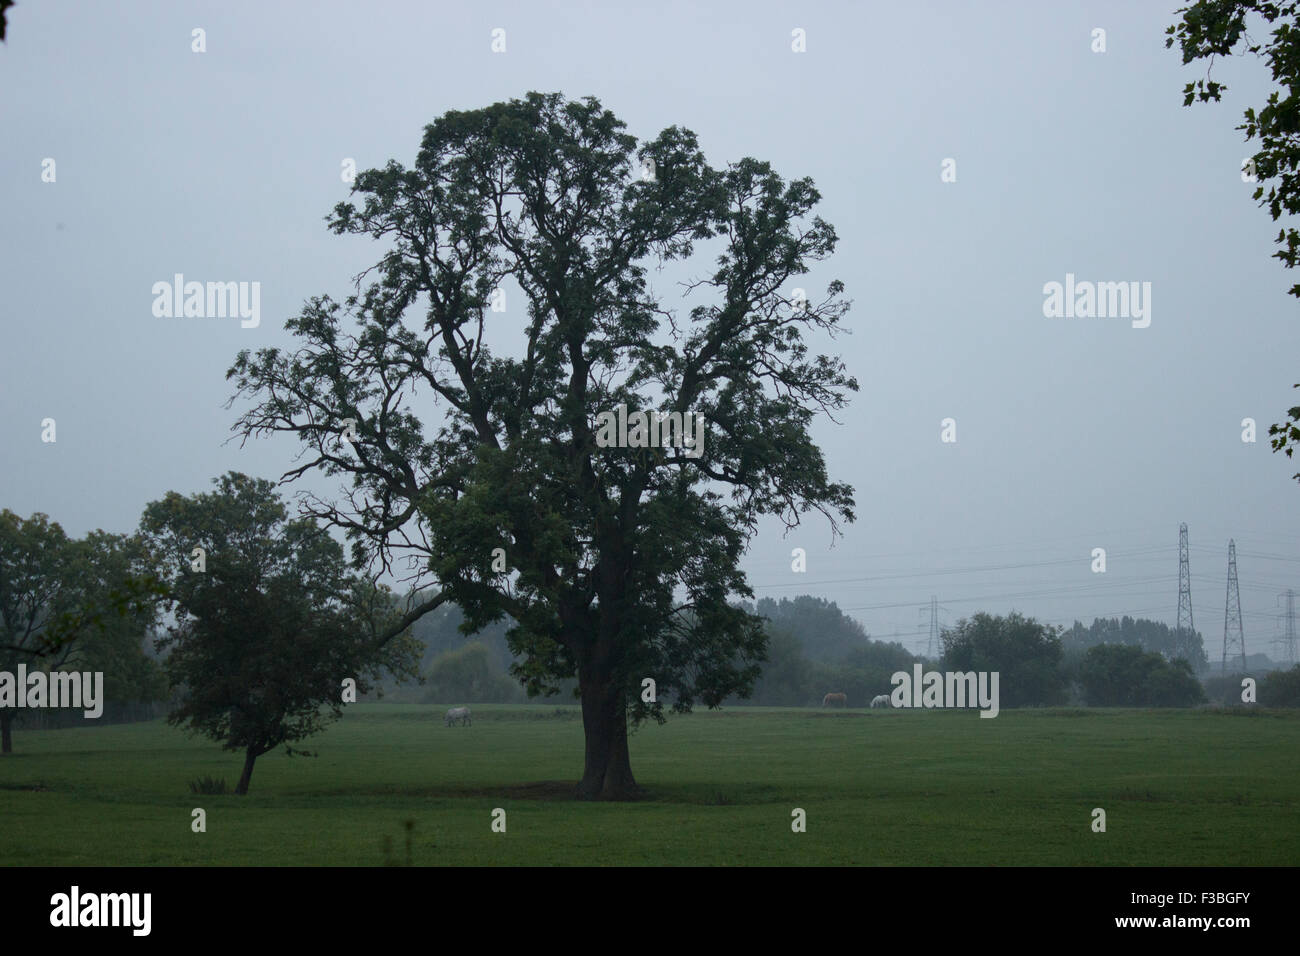 Zwei Bäume stehen alleine in einem Feld mit mehr Bäume am Horizont. Es ist ein bewölkter Tag. Stockfoto